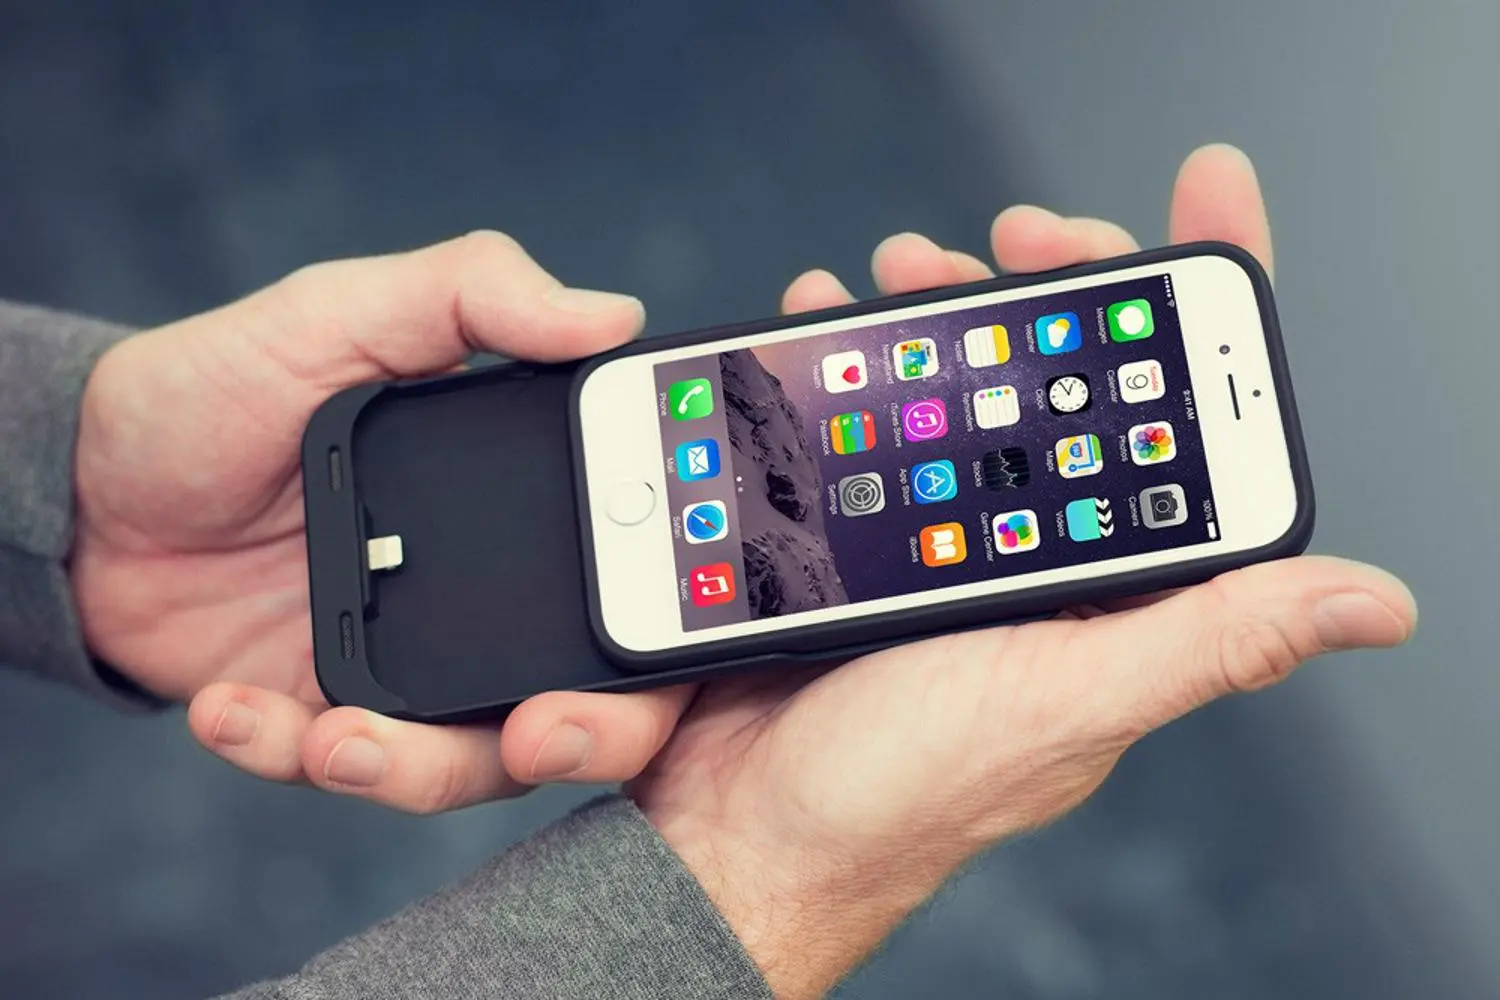 Apple droht eine 2-Milliarden-Dollar-Strafe wegen der Langsamkeit von iPhone 6 und iPhone 6s